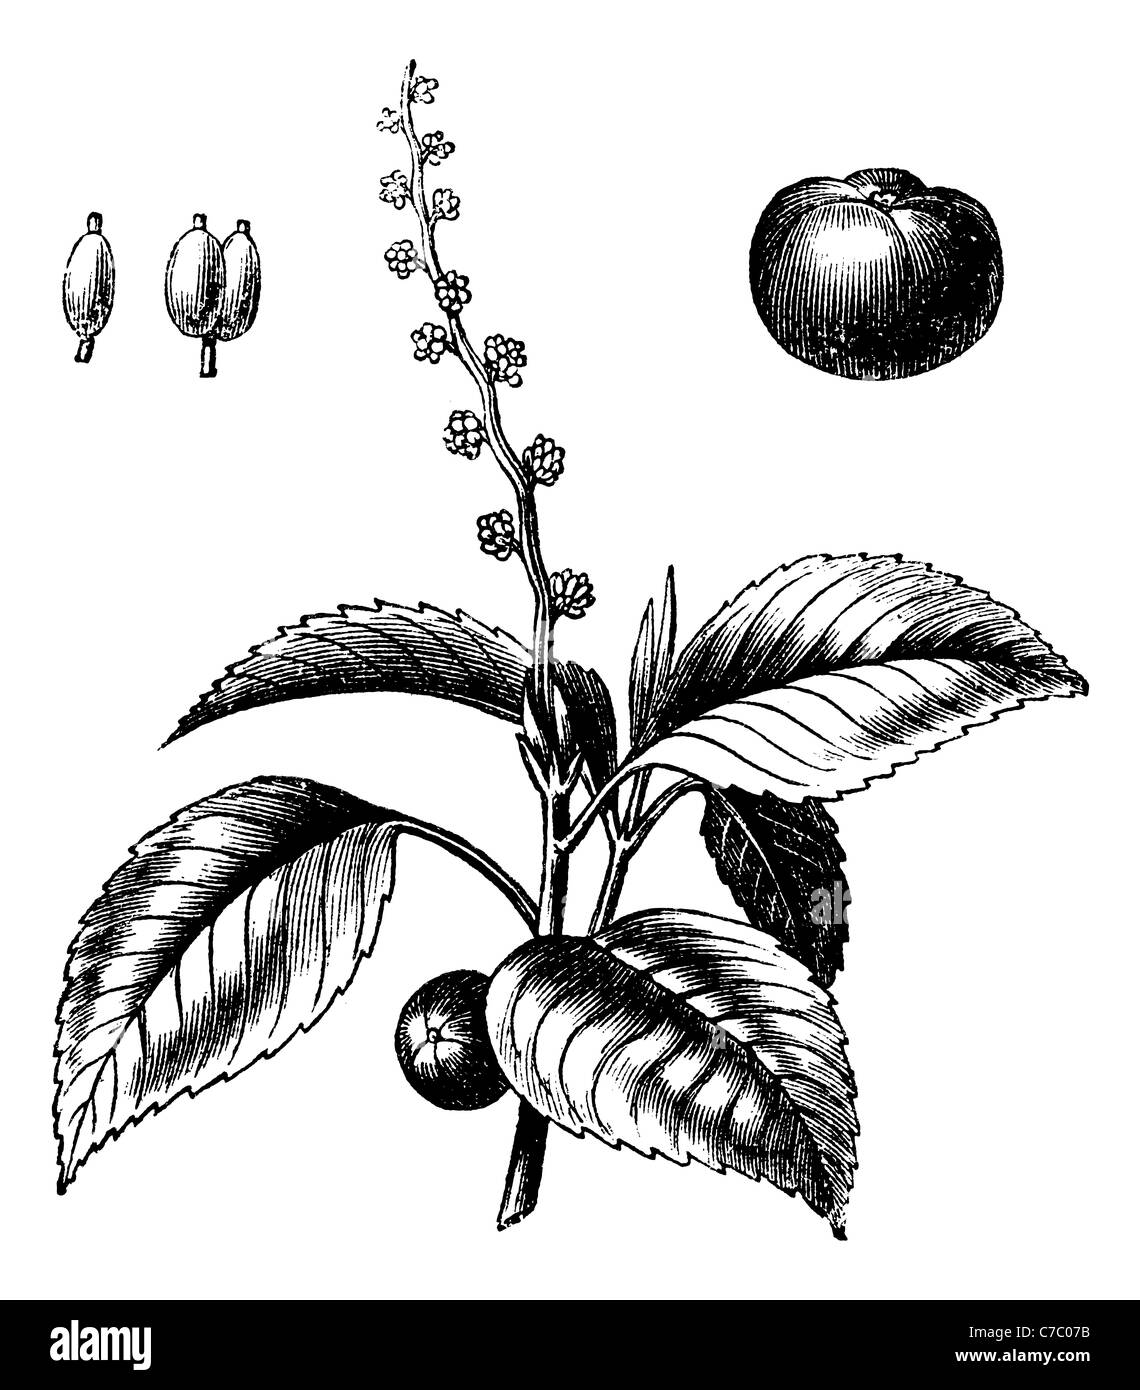 Árbol o Mancinella manchineel, vintage grabado. Ilustración de grabado antiguo árbol Manchineel aislado sobre un fondo blanco. Foto de stock